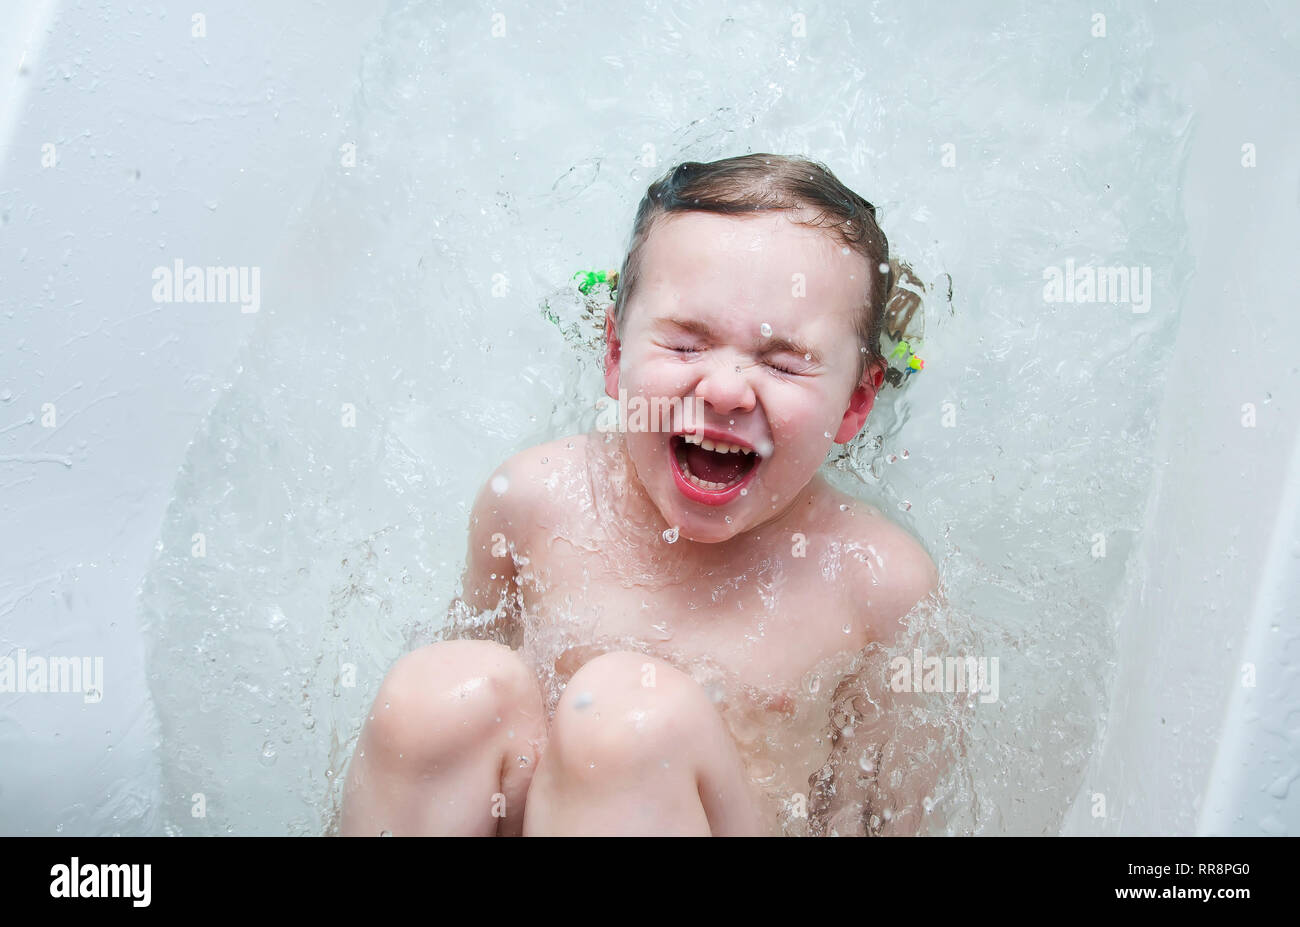 Kleines Mädchen In Der Badewanne Spielen Mit Wasser Tropfen Und Spritzer Stockfotografie Alamy